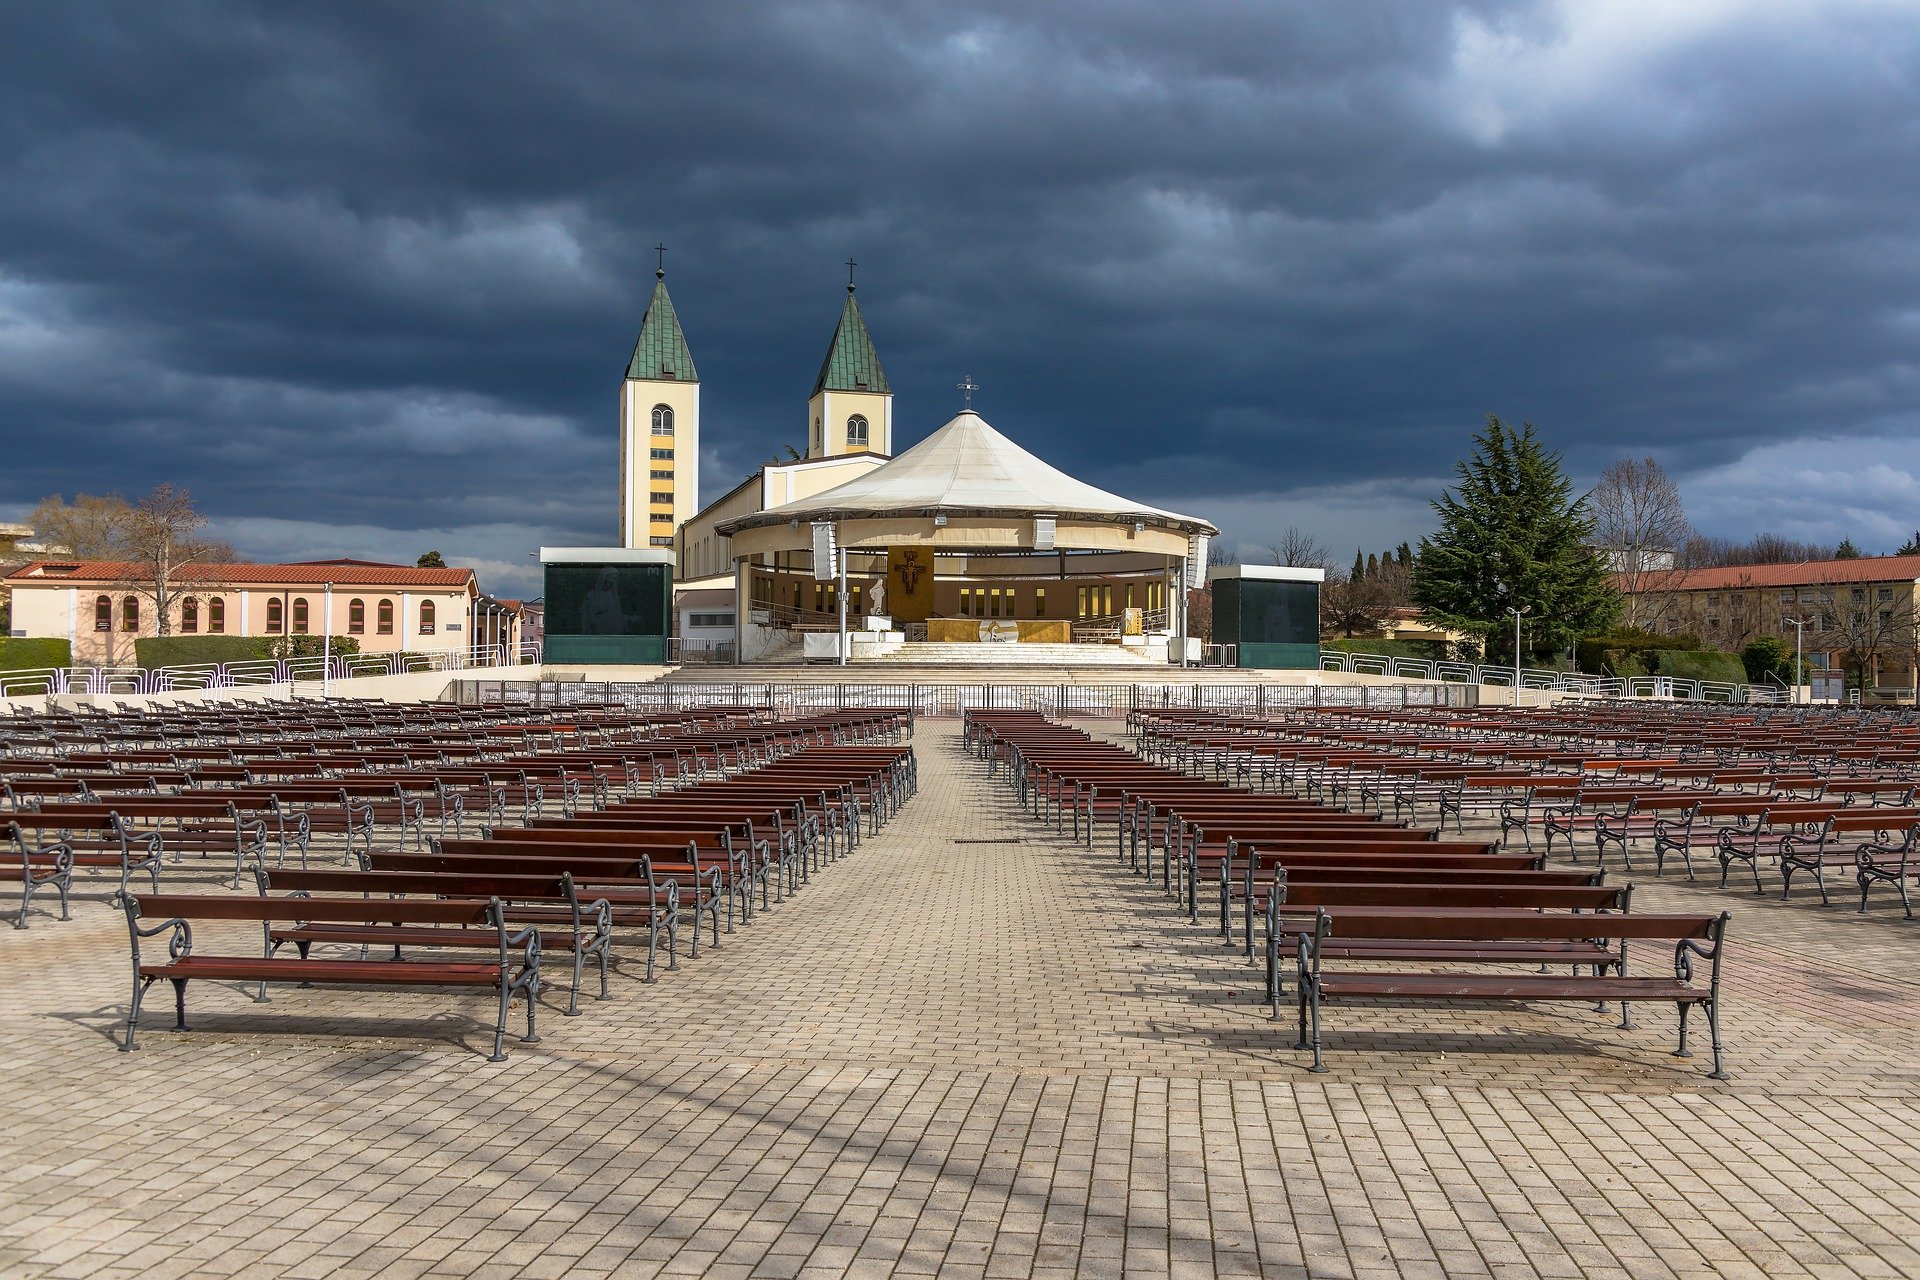 St. James Church in Medjugorje (photo: Michael Kleinsasser)